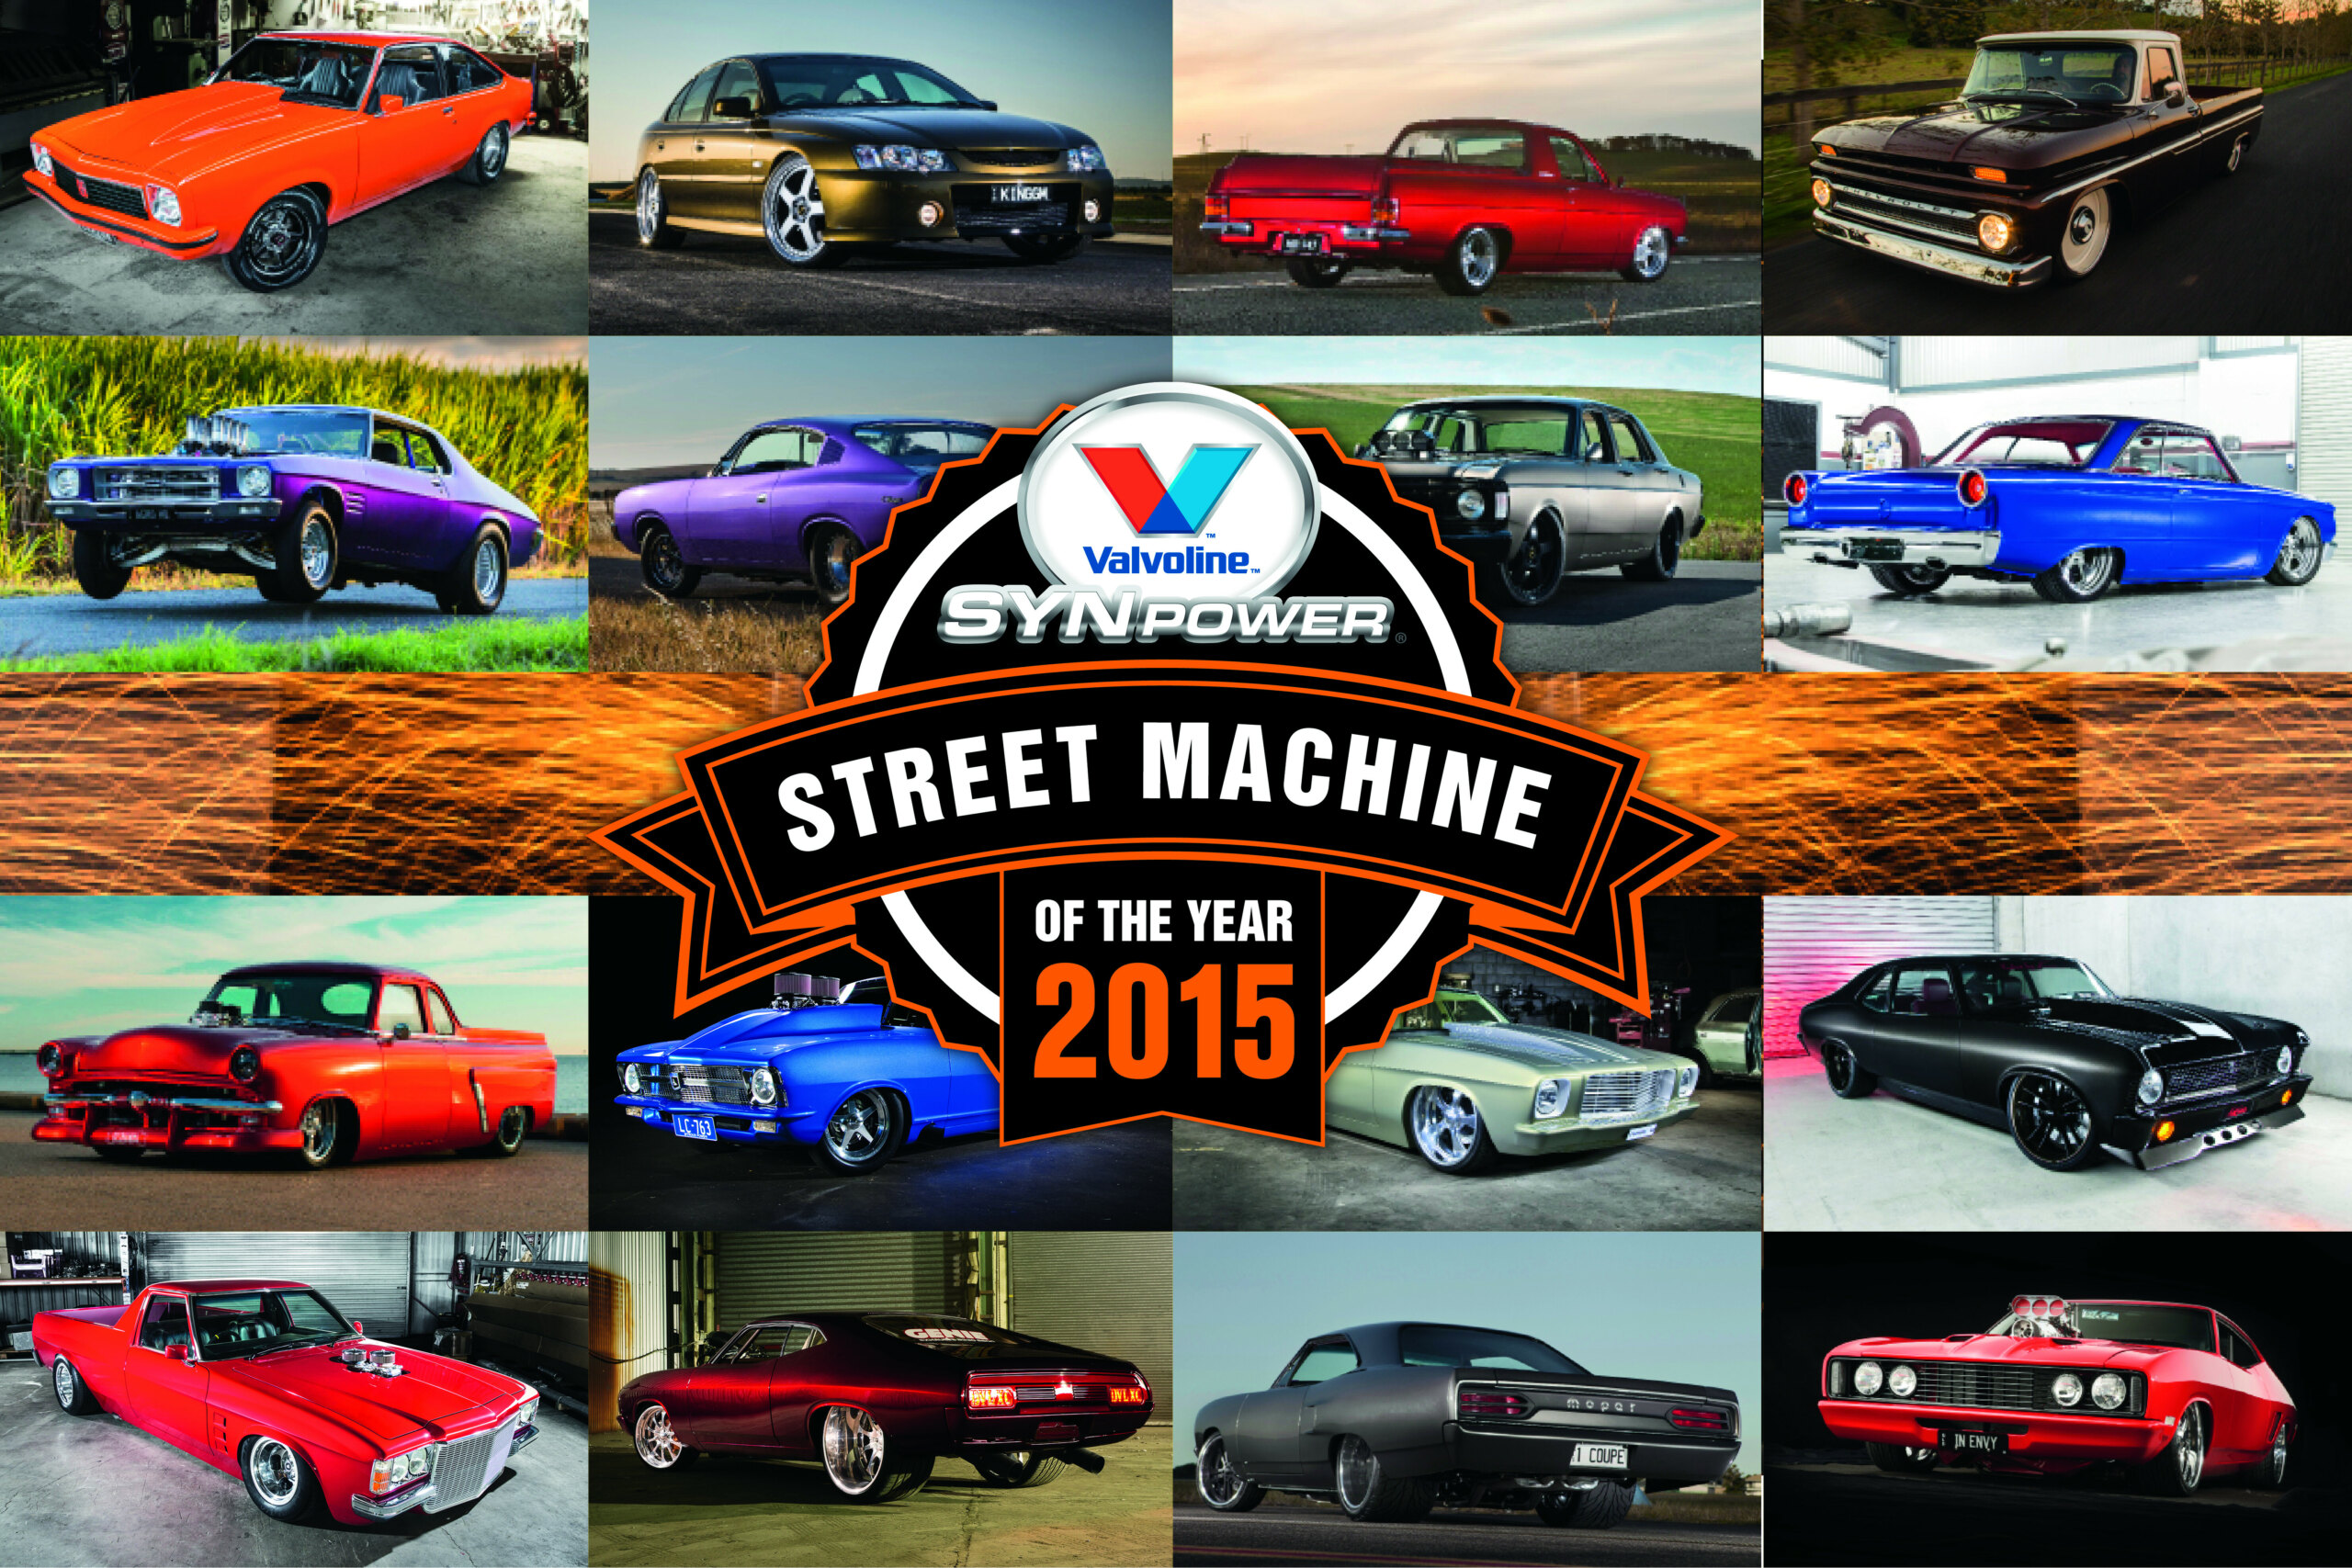 STREET MACHINE OF THE YEAR 2015